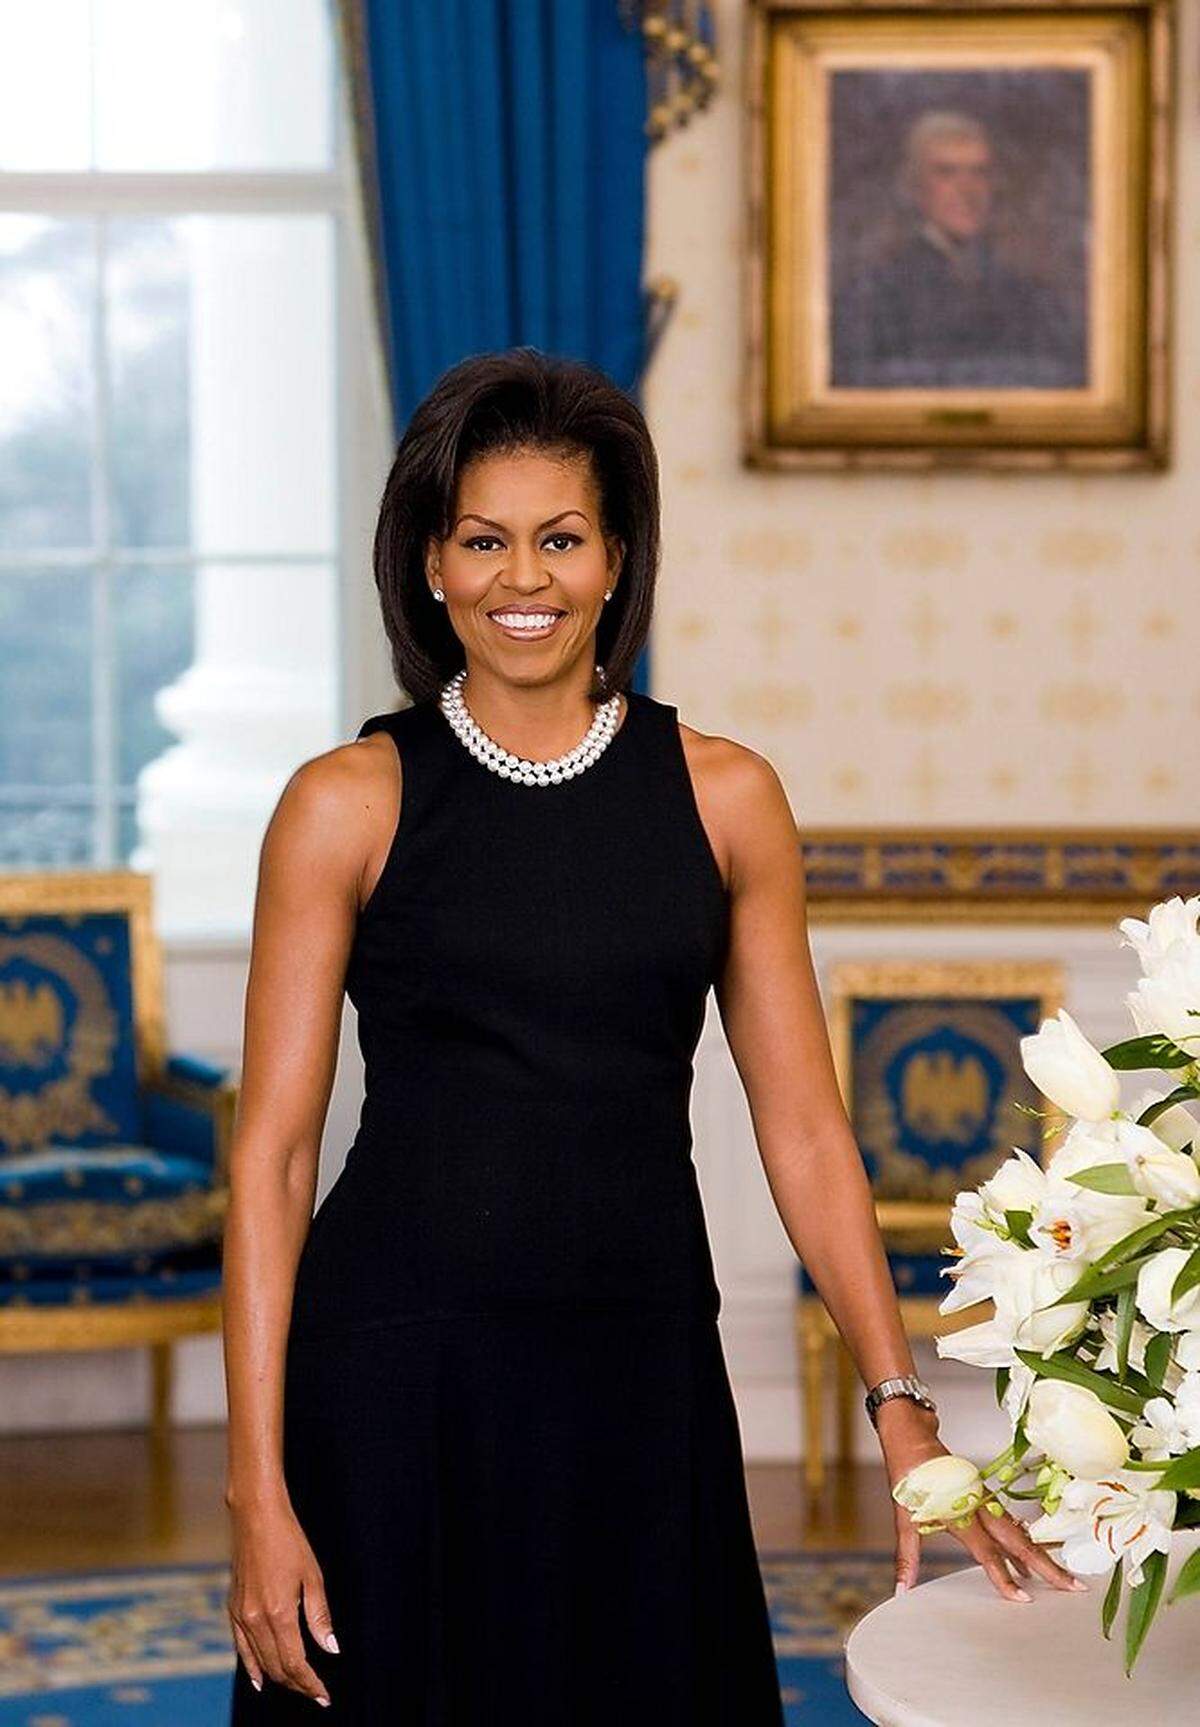 Ganz ohne Kritik wurde aber auch Michelle Obamas erstes Porträtfoto nicht aufgenommen. Die Pose sei zwar klassisch - die frühere Anwältin zeige auf dem Bild aber zu viel Haut. Obama ließ sich von der Kritik aber nicht beirren: Ihr selbstbewusster Umgang mit Kleidung brachte ihr über die Jahre den Status einer wahren - selbstsicheren - Modeikone ein.